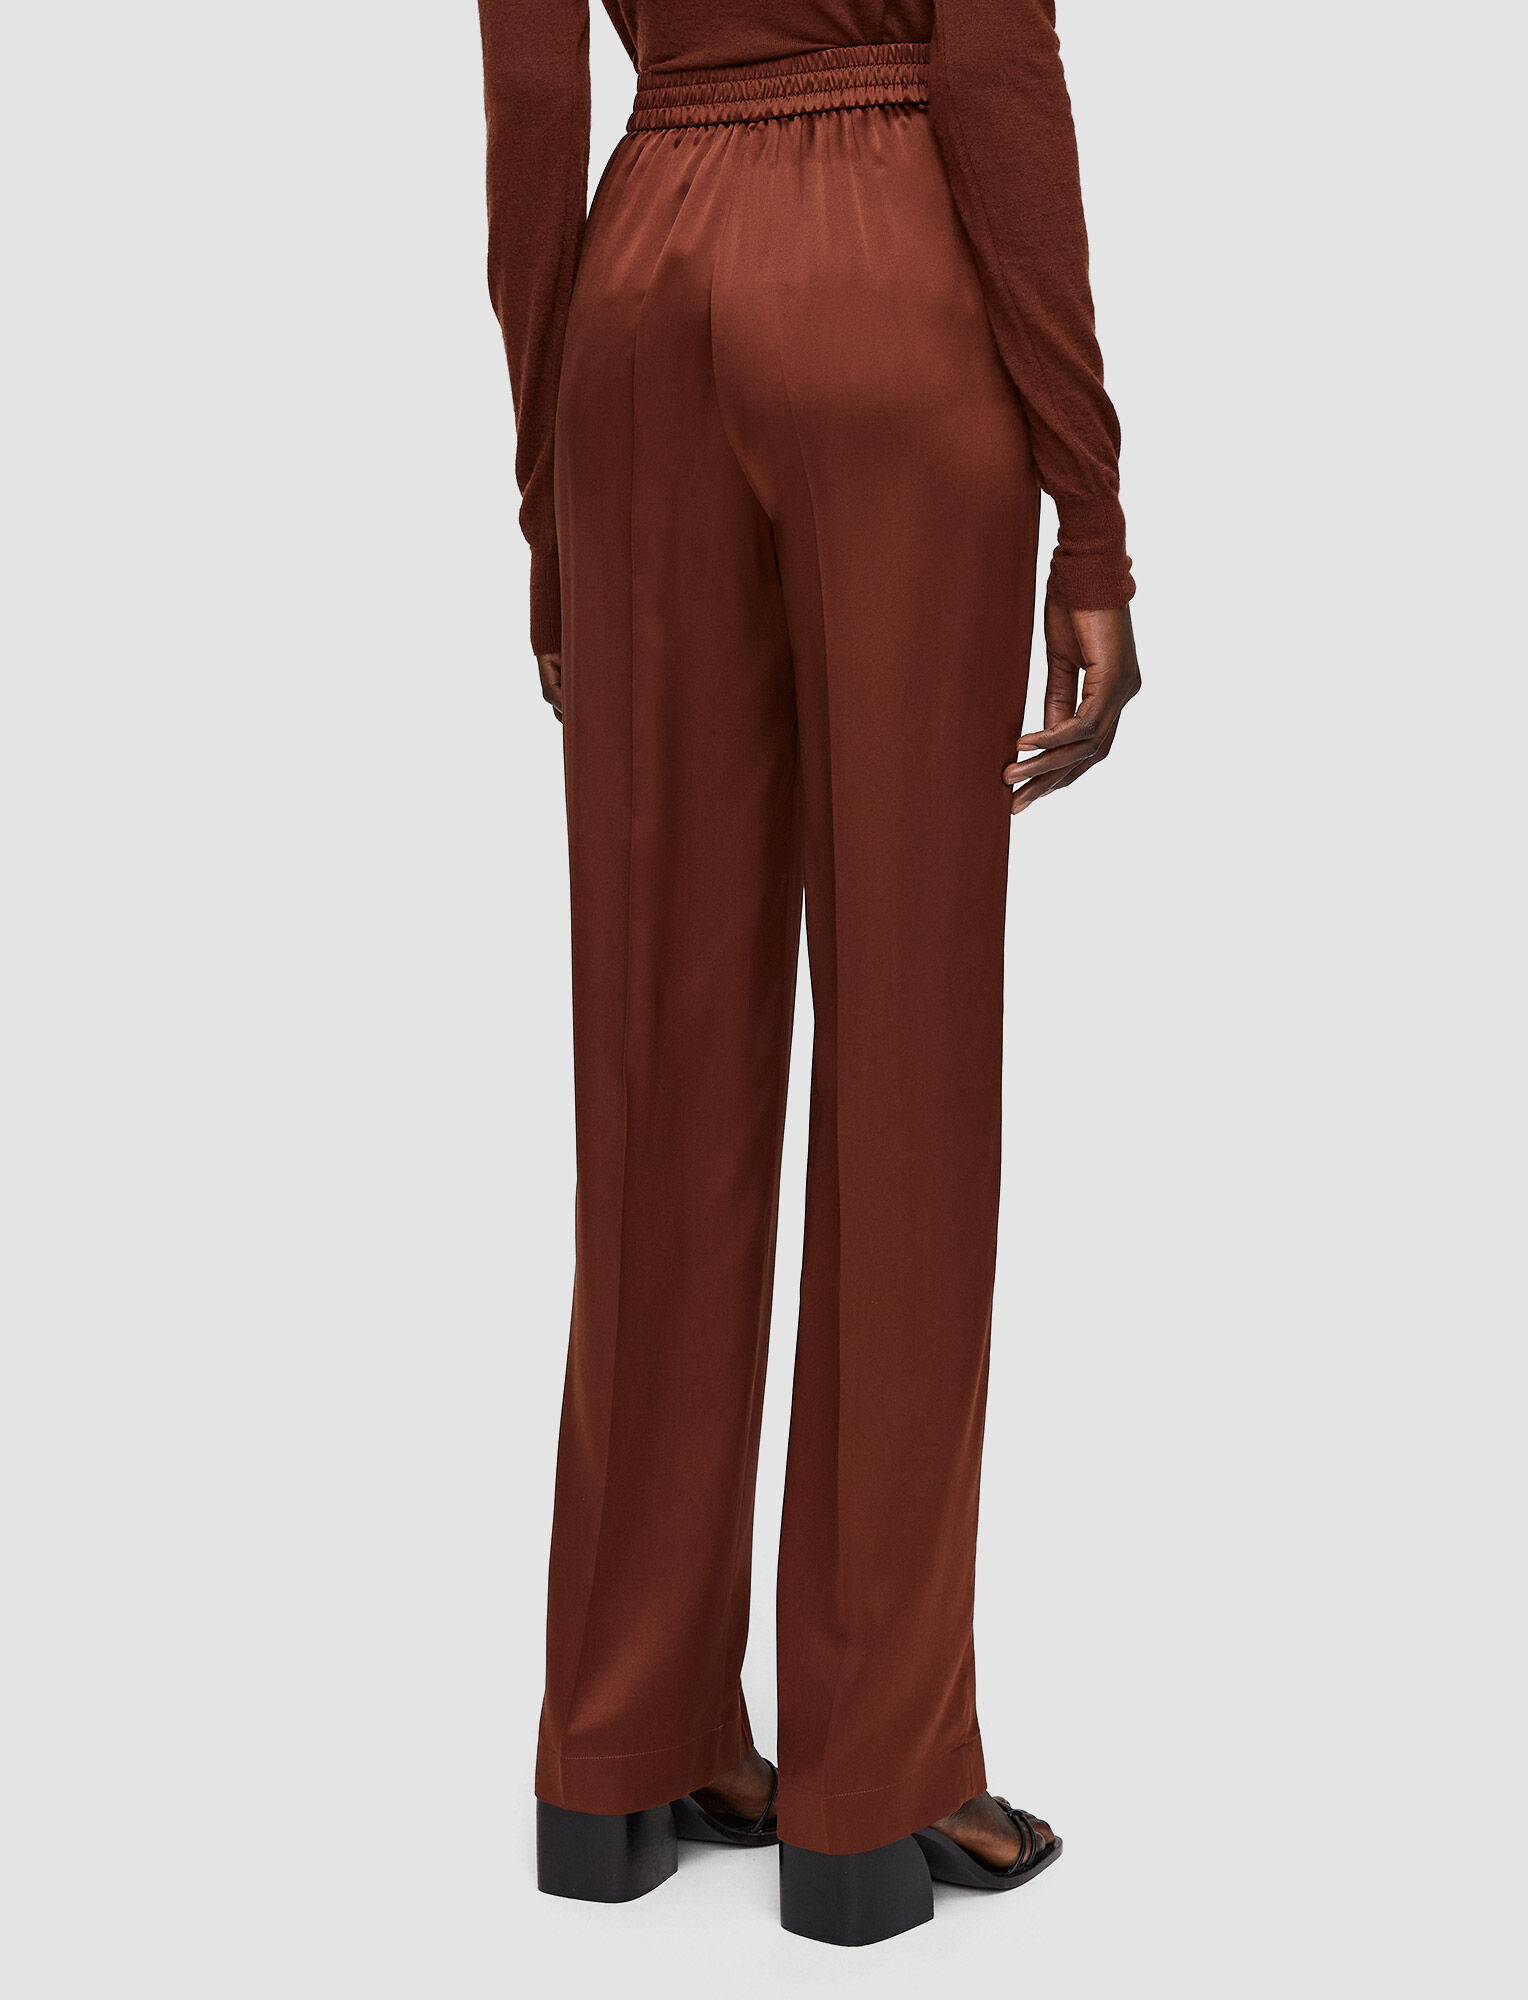 Silk Satin Tova Trousers in Brown